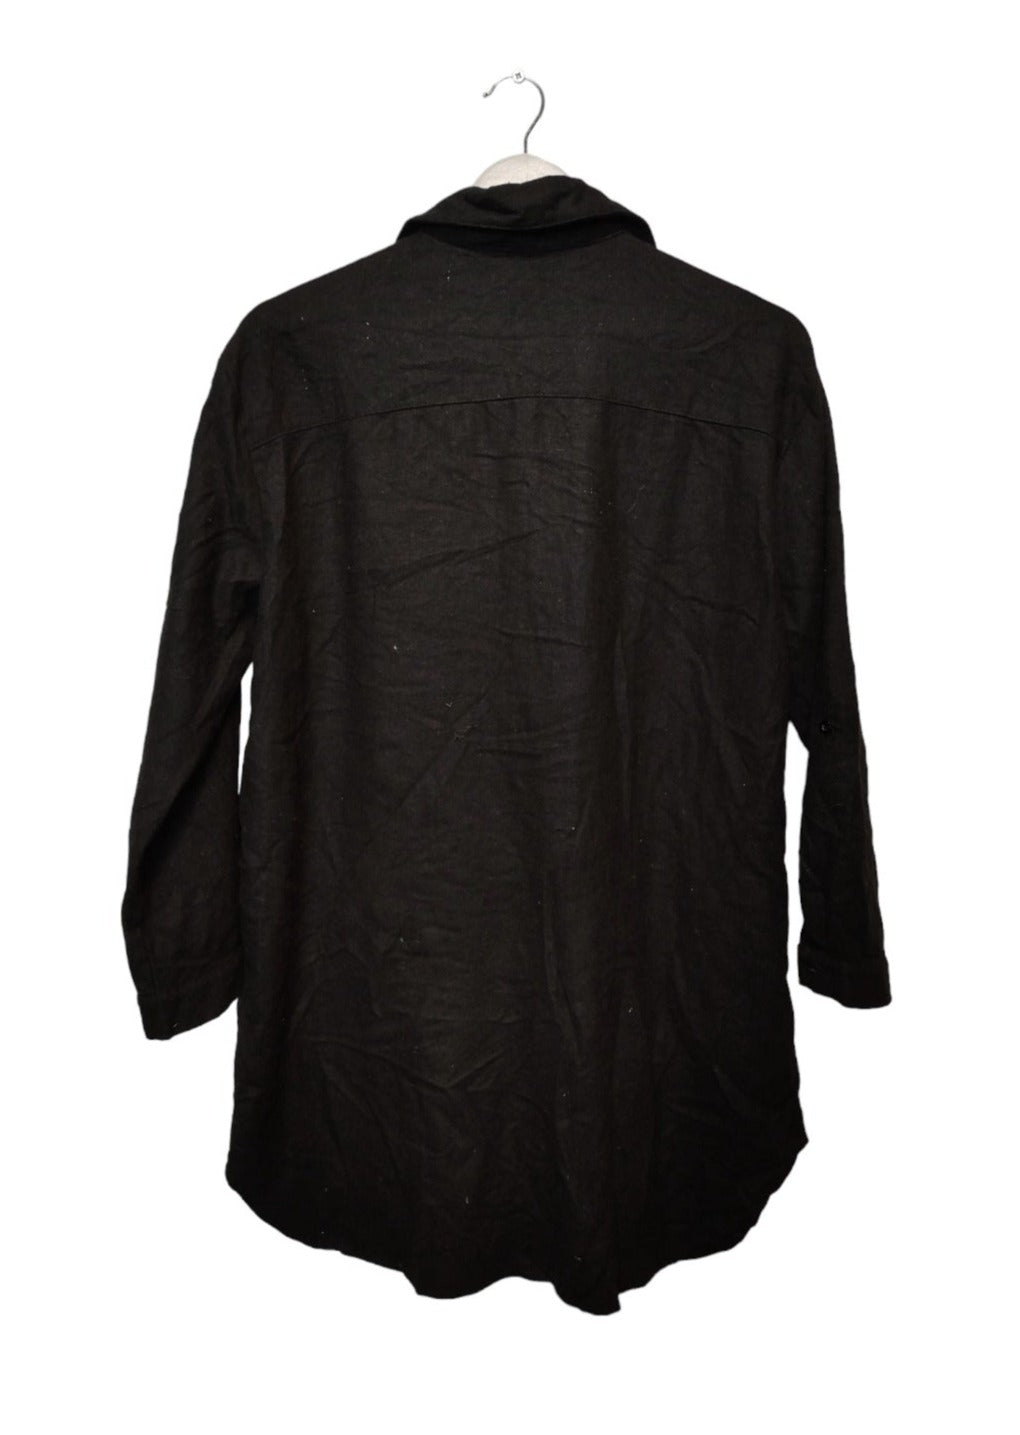 Μακρύ, Χονδρό Γυναικείο Πουκάμισο - Flannel GUSTA σε Μαύρο χρώμα (M/L)